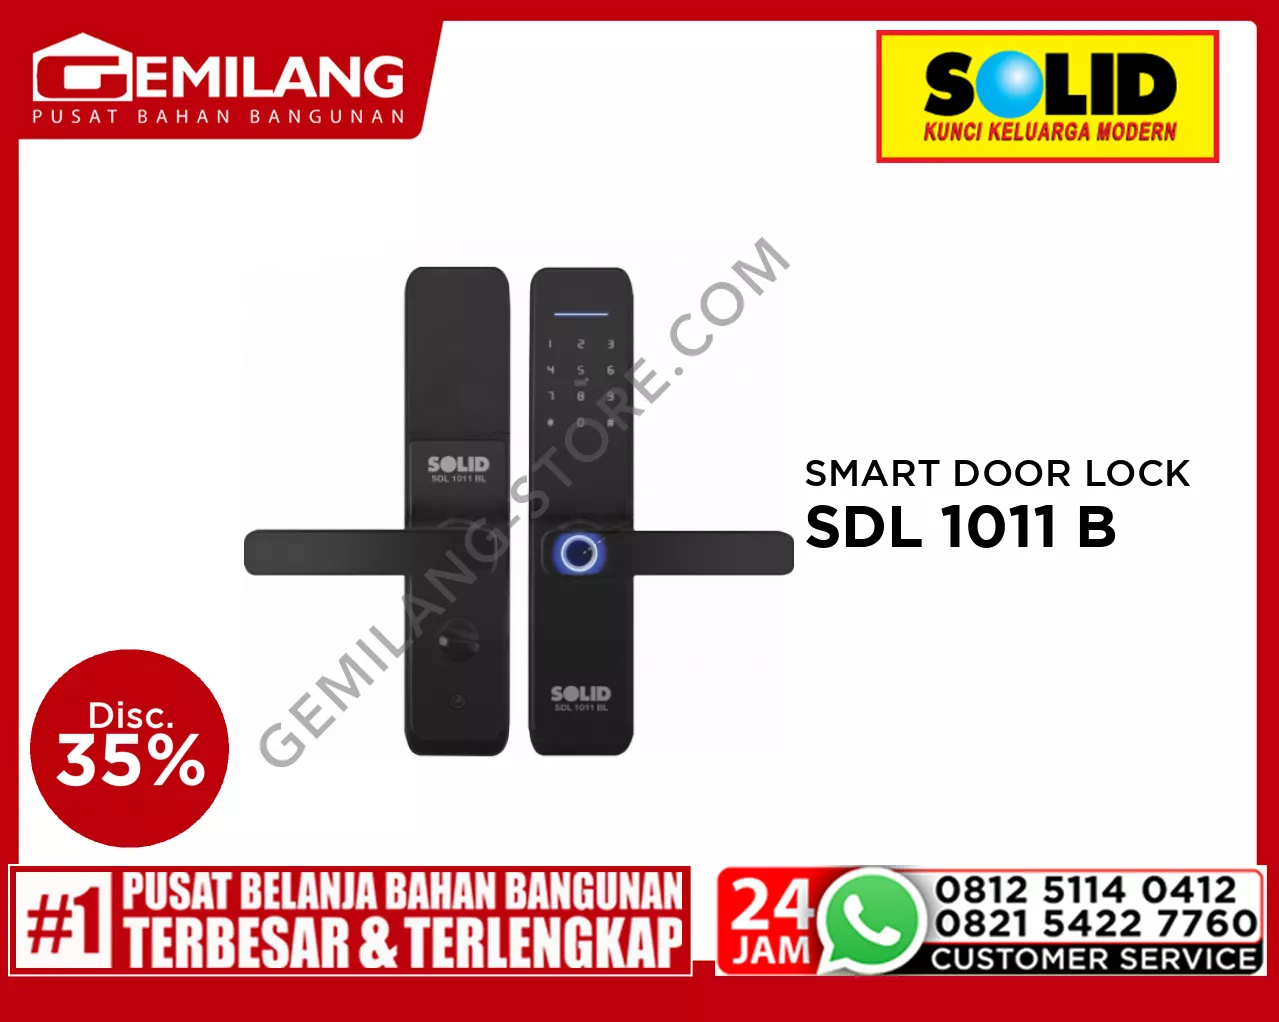 SOLID SMART DOOR LOCK SDL 1011 BL